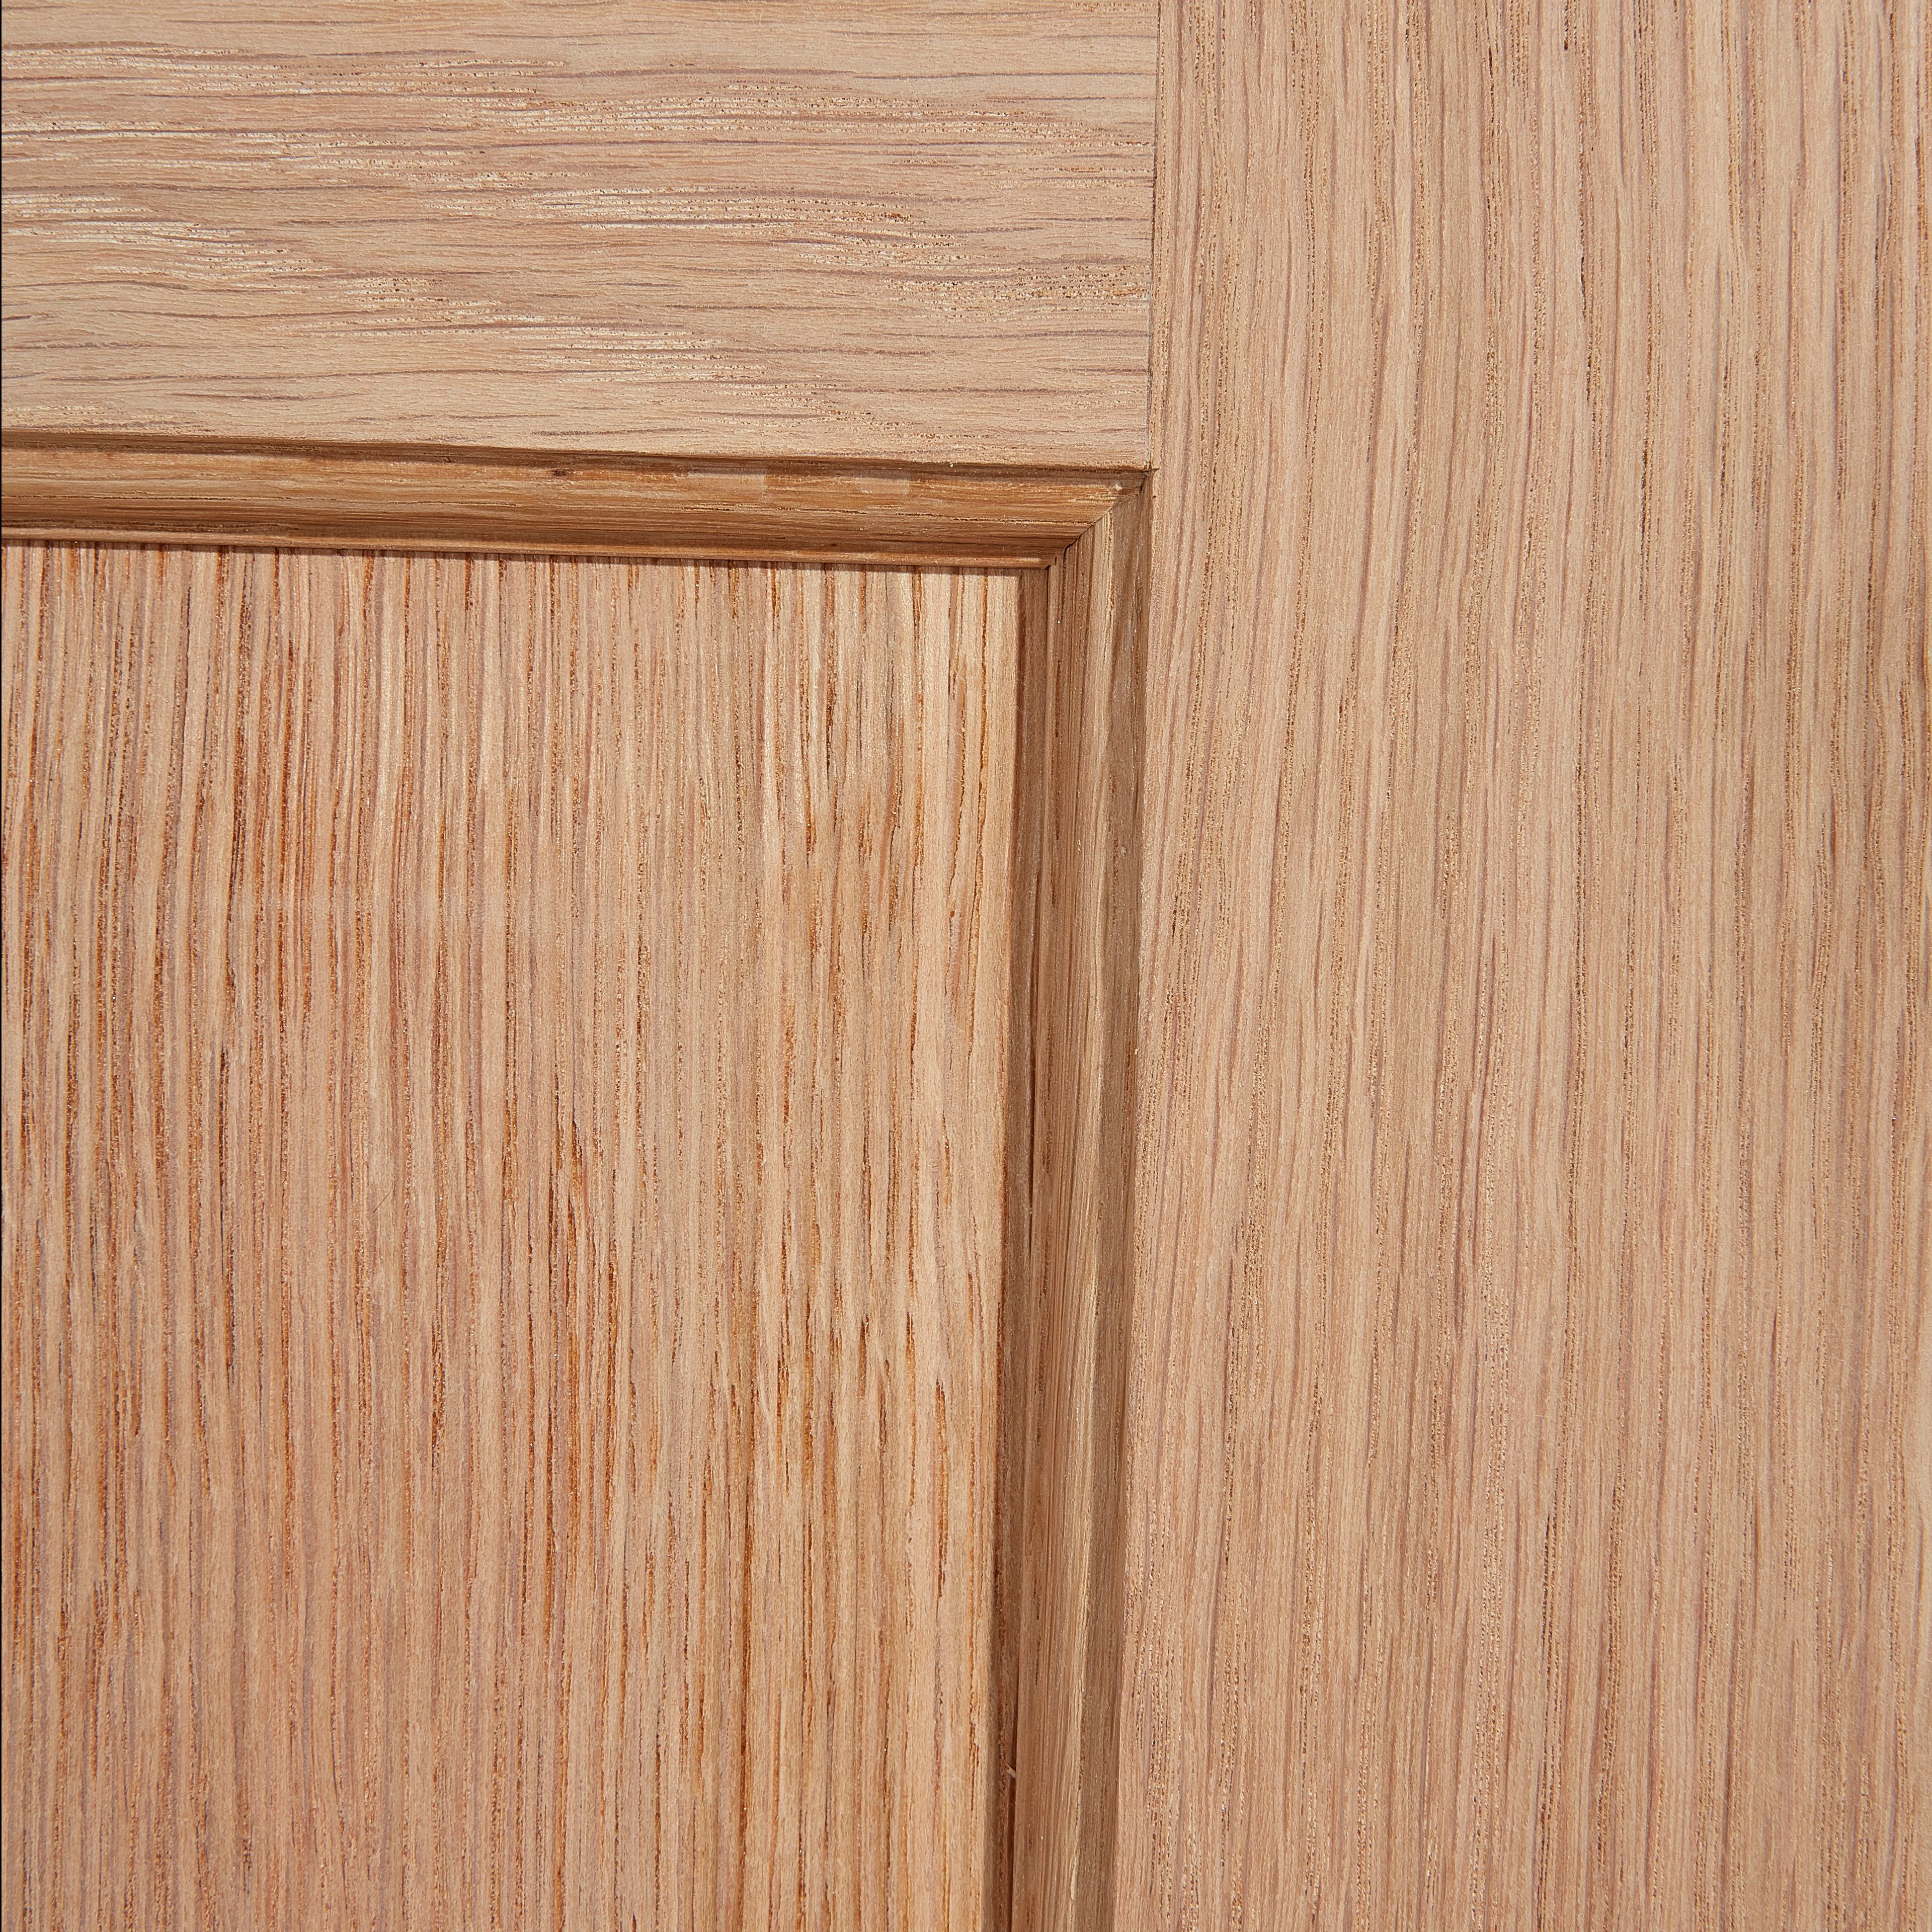 4 panel Unglazed Oak veneer Internal Fire door, (H)1981mm (W)686mm (T)35mm